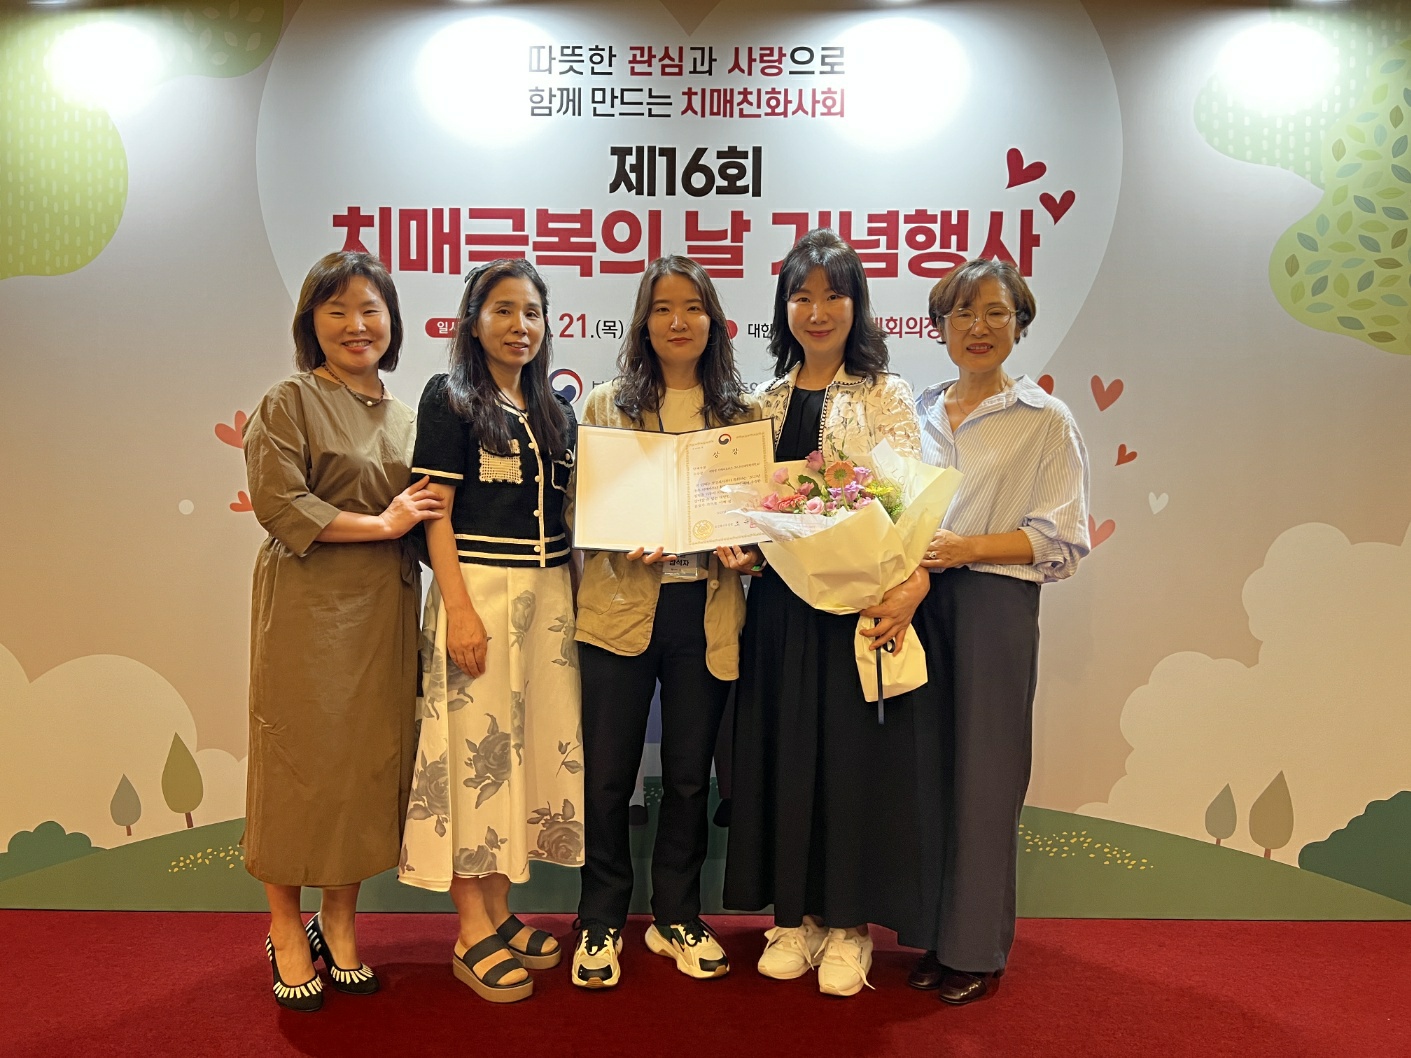 [정브레인노트]치매 파트너 활동 경진대회에서 보건복지부장관상 수상한 온석대학원대학교 학생들